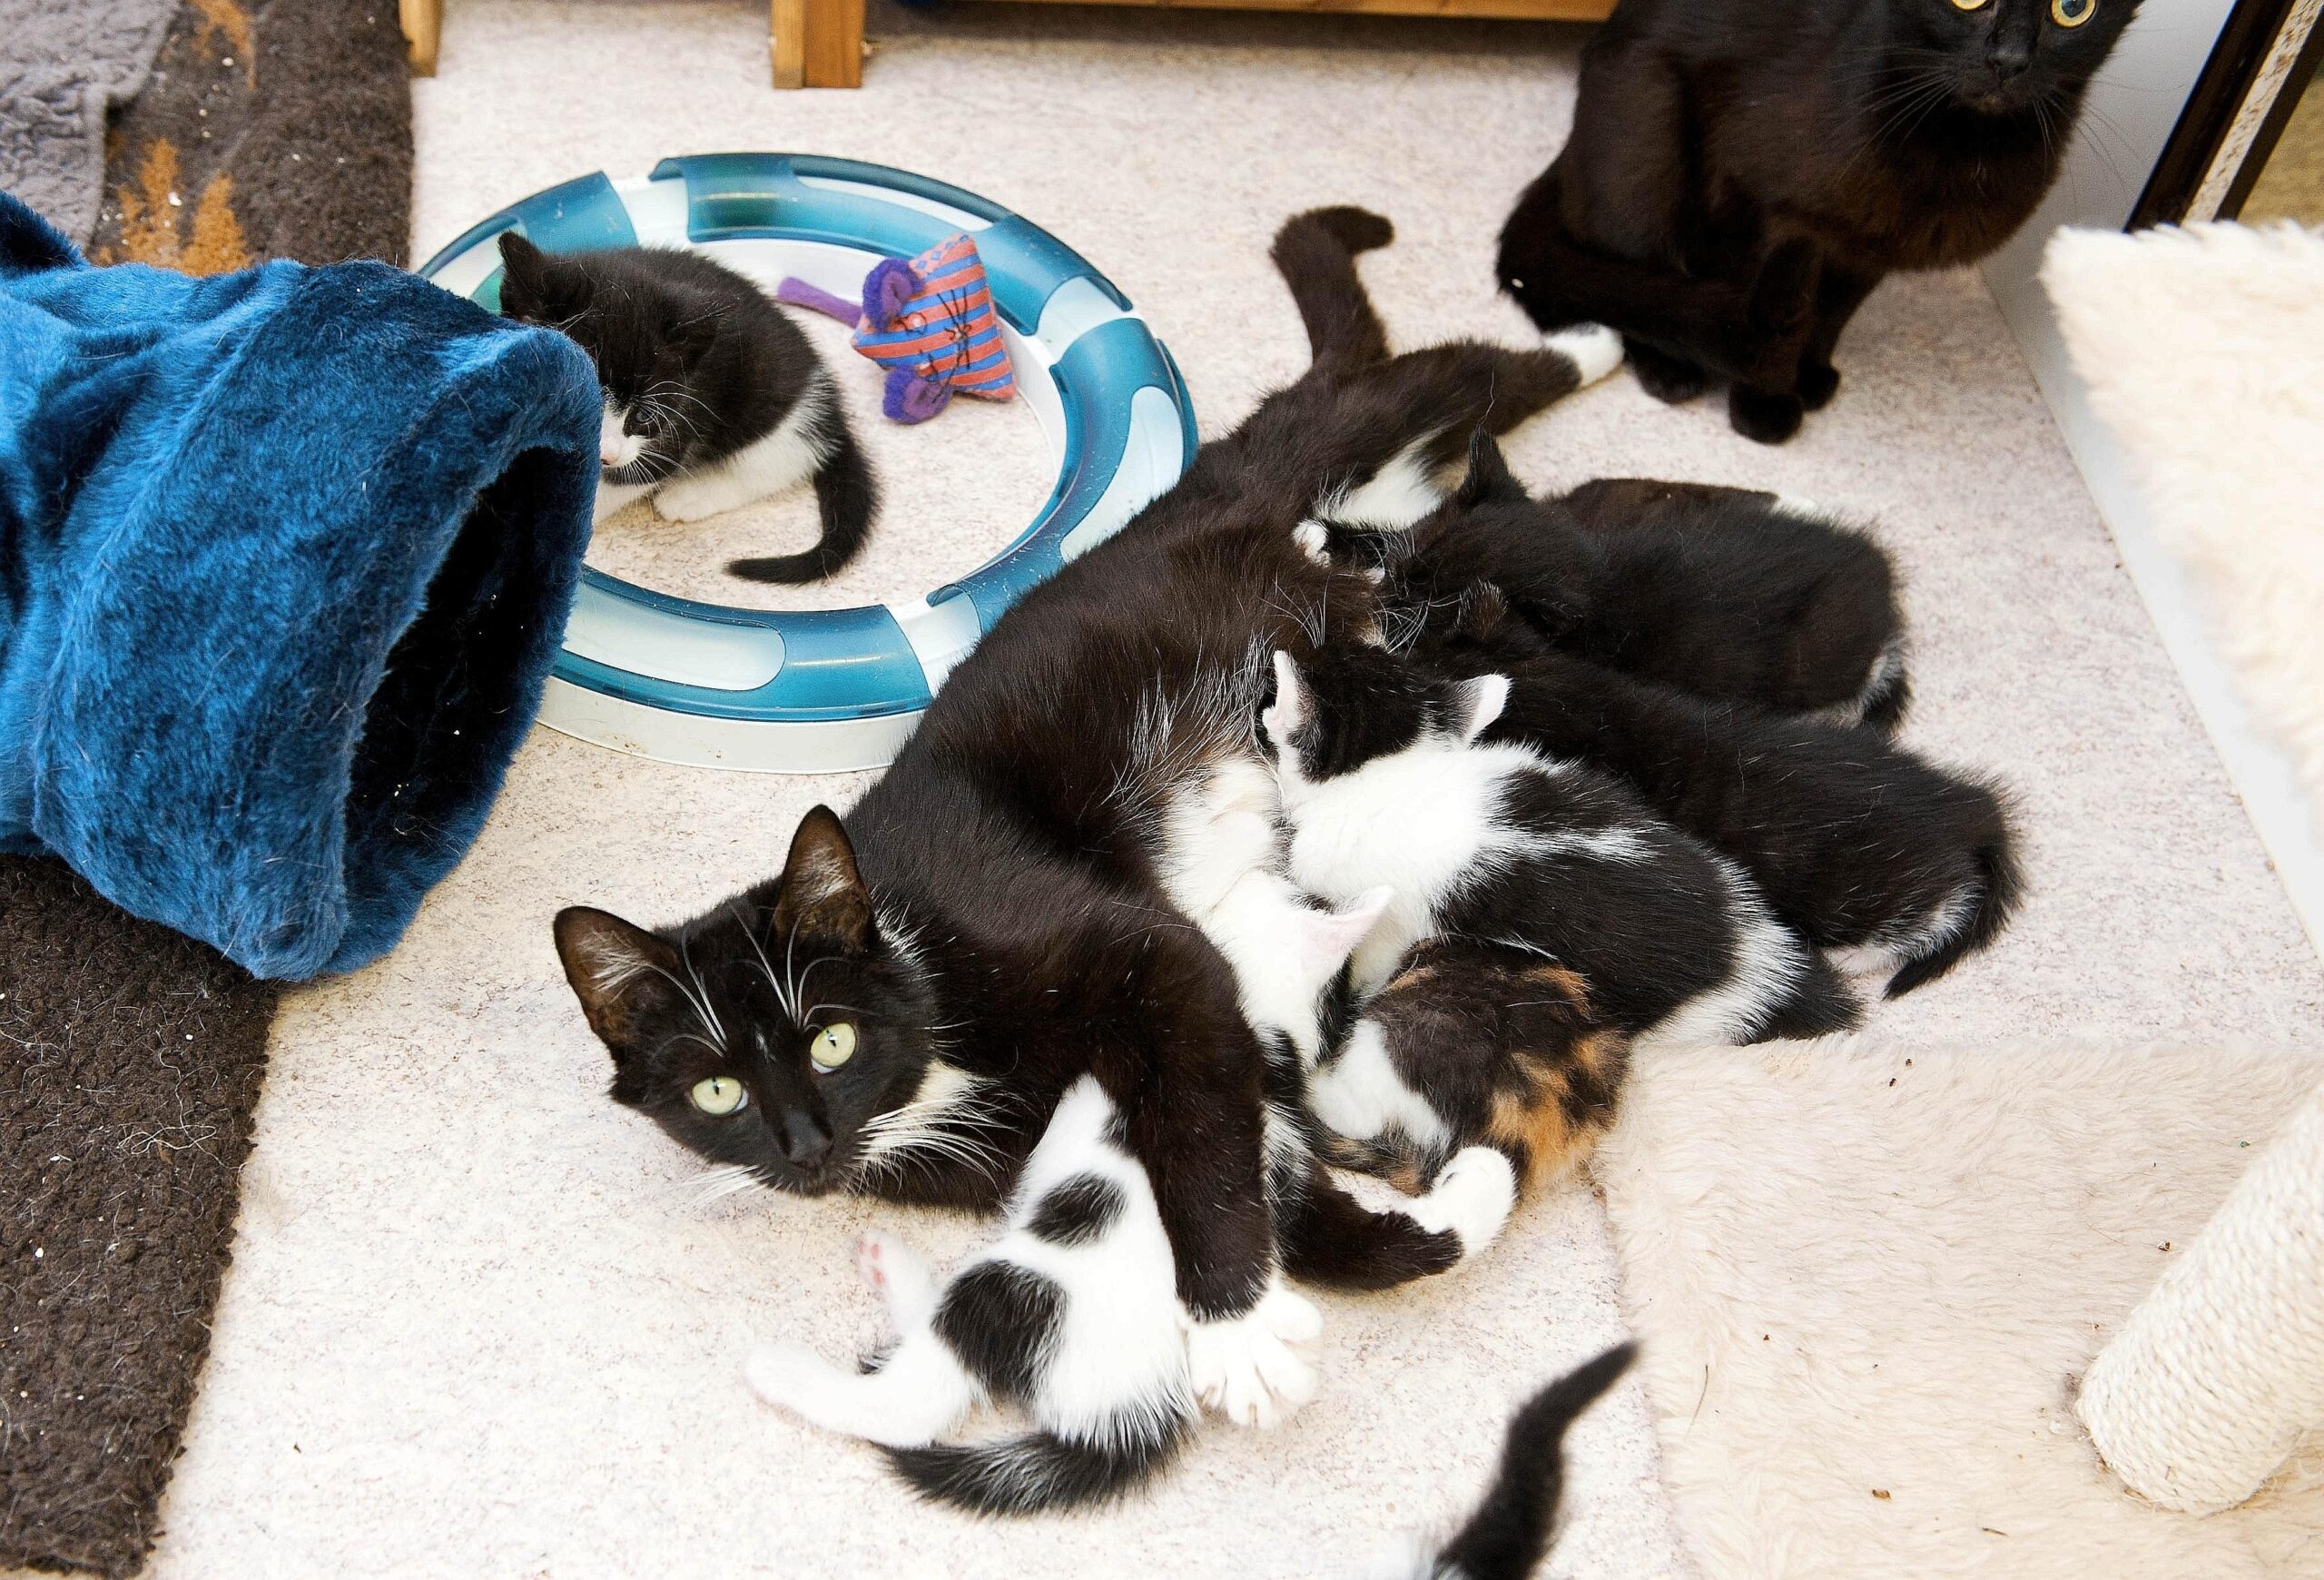 Am Freitag, den 10.06.2011 säugen einige junge Katzen an ihrer Mutter. Sie und ihre Geschwister werden betreut von dem Verein Tiere in Not e. V. Bochum. Foto: Olaf Ziegler / WAZ FotoPool